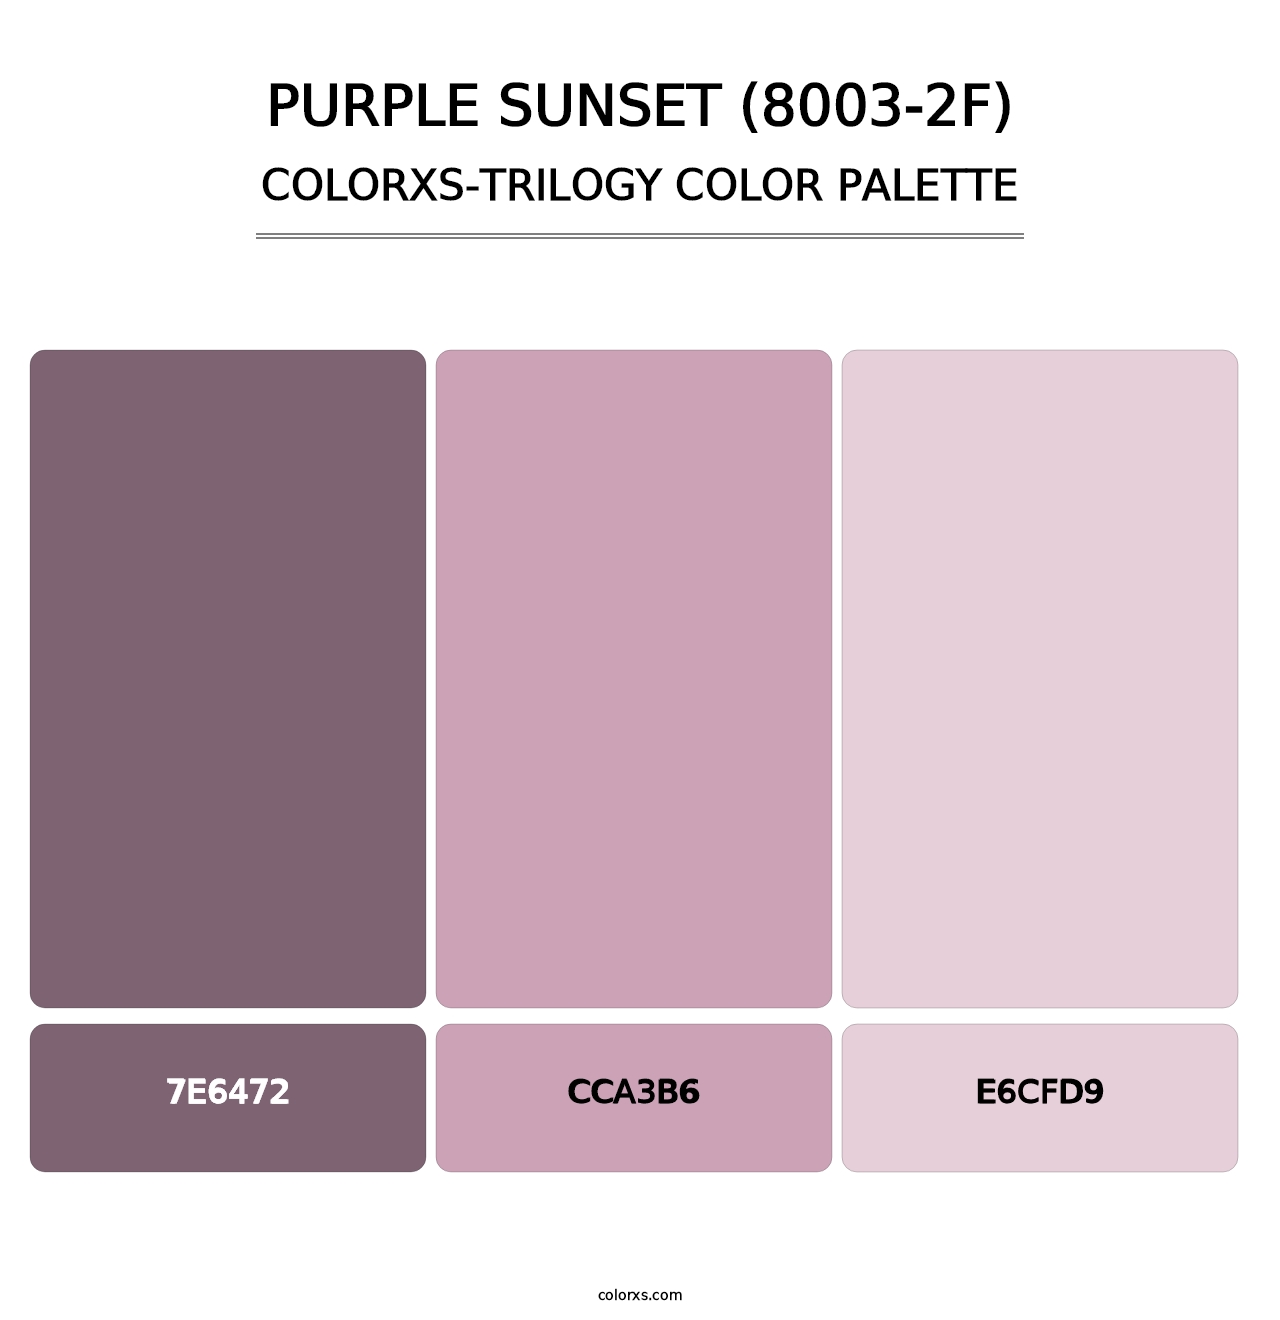 Purple Sunset (8003-2F) - Colorxs Trilogy Palette